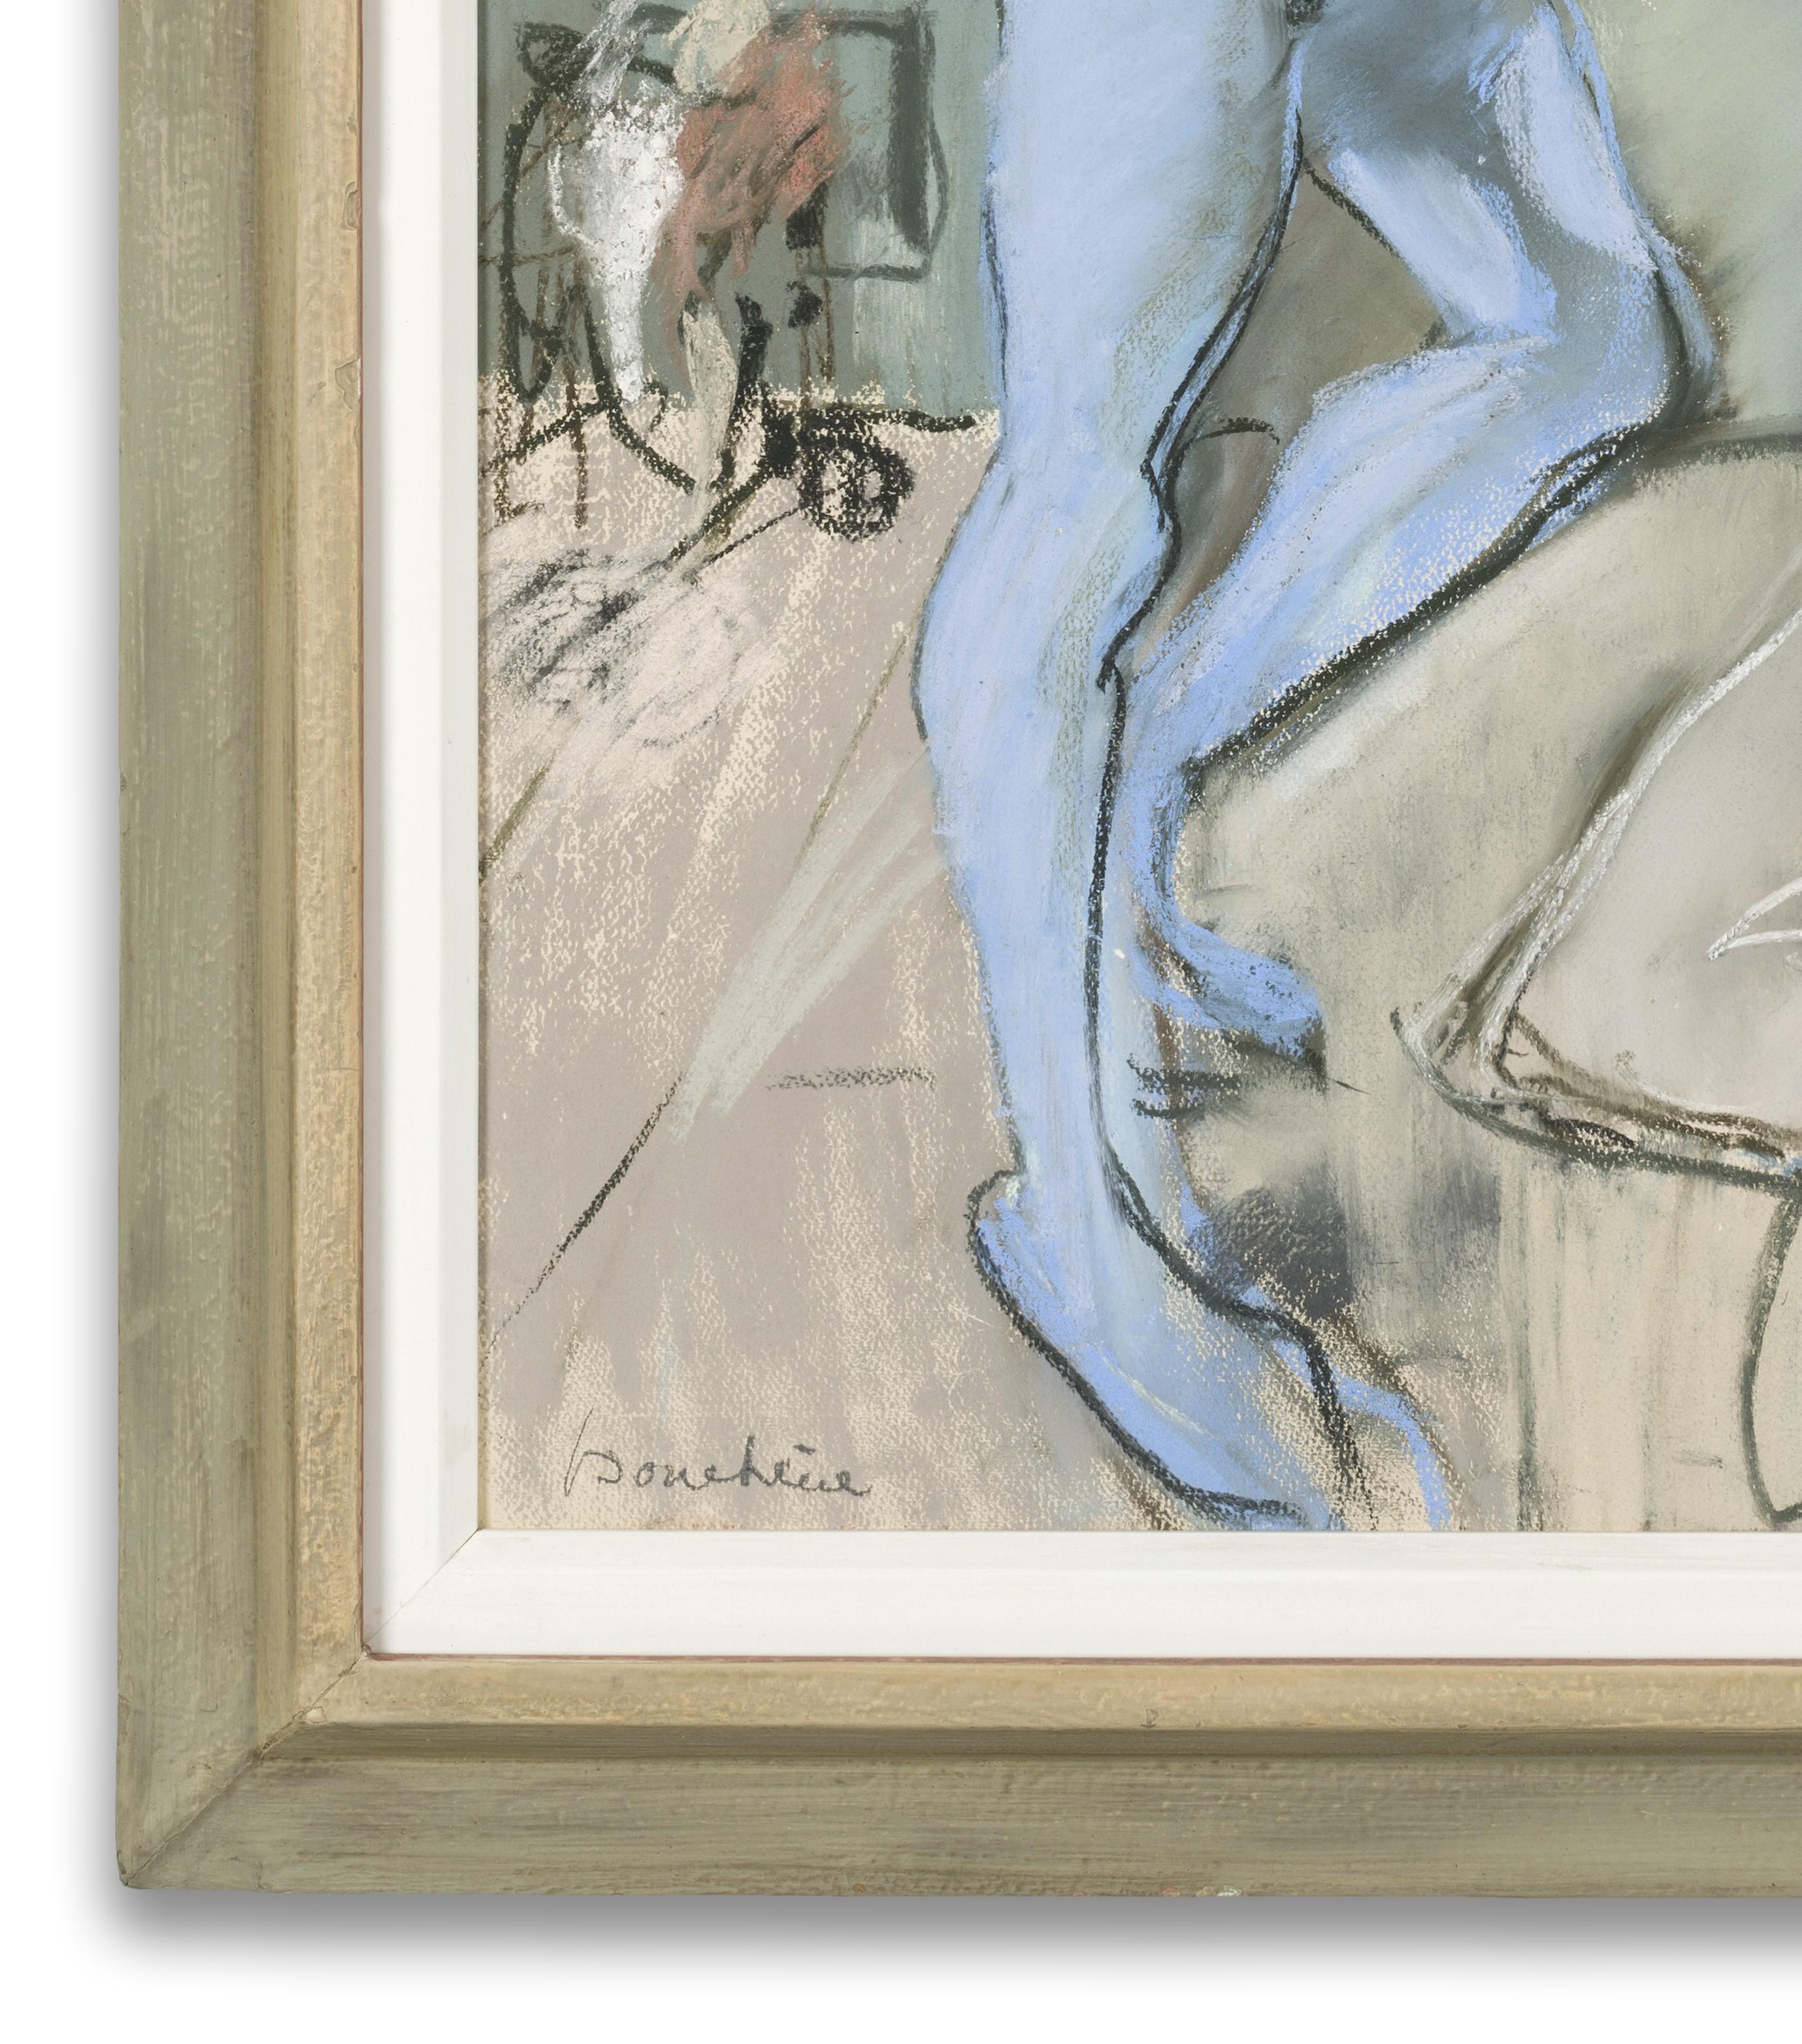 Pastell auf Papier, signiert unten links, 63cm x 49cm (gerahmt 75cm x 60cm). 

Bouchéne war ein russischer Künstler und Kostüm- und Bühnenbildner für Theater, Oper und Ballett. Er arbeitete hauptsächlich in Paris und zählte Serge Diaghilev und Anna